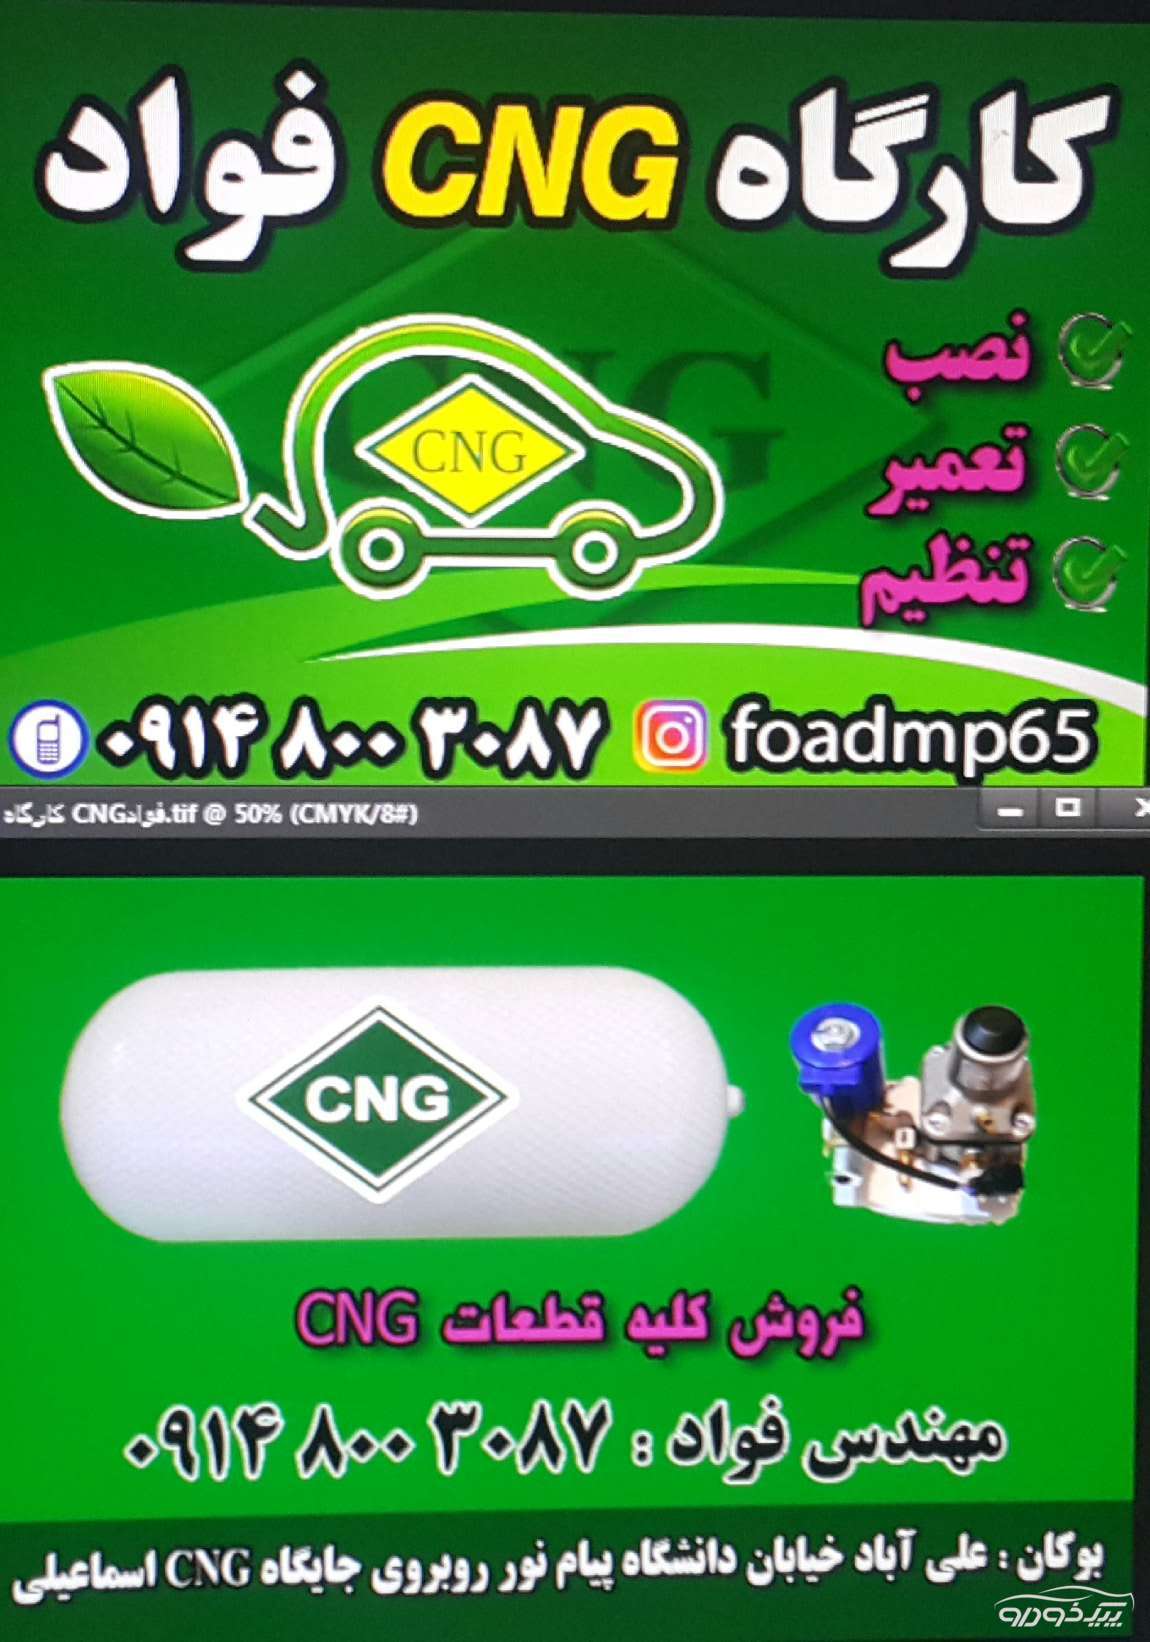 نصب CNG سکونشیال برروی خودروهای ایرانی وخارجی بوکان